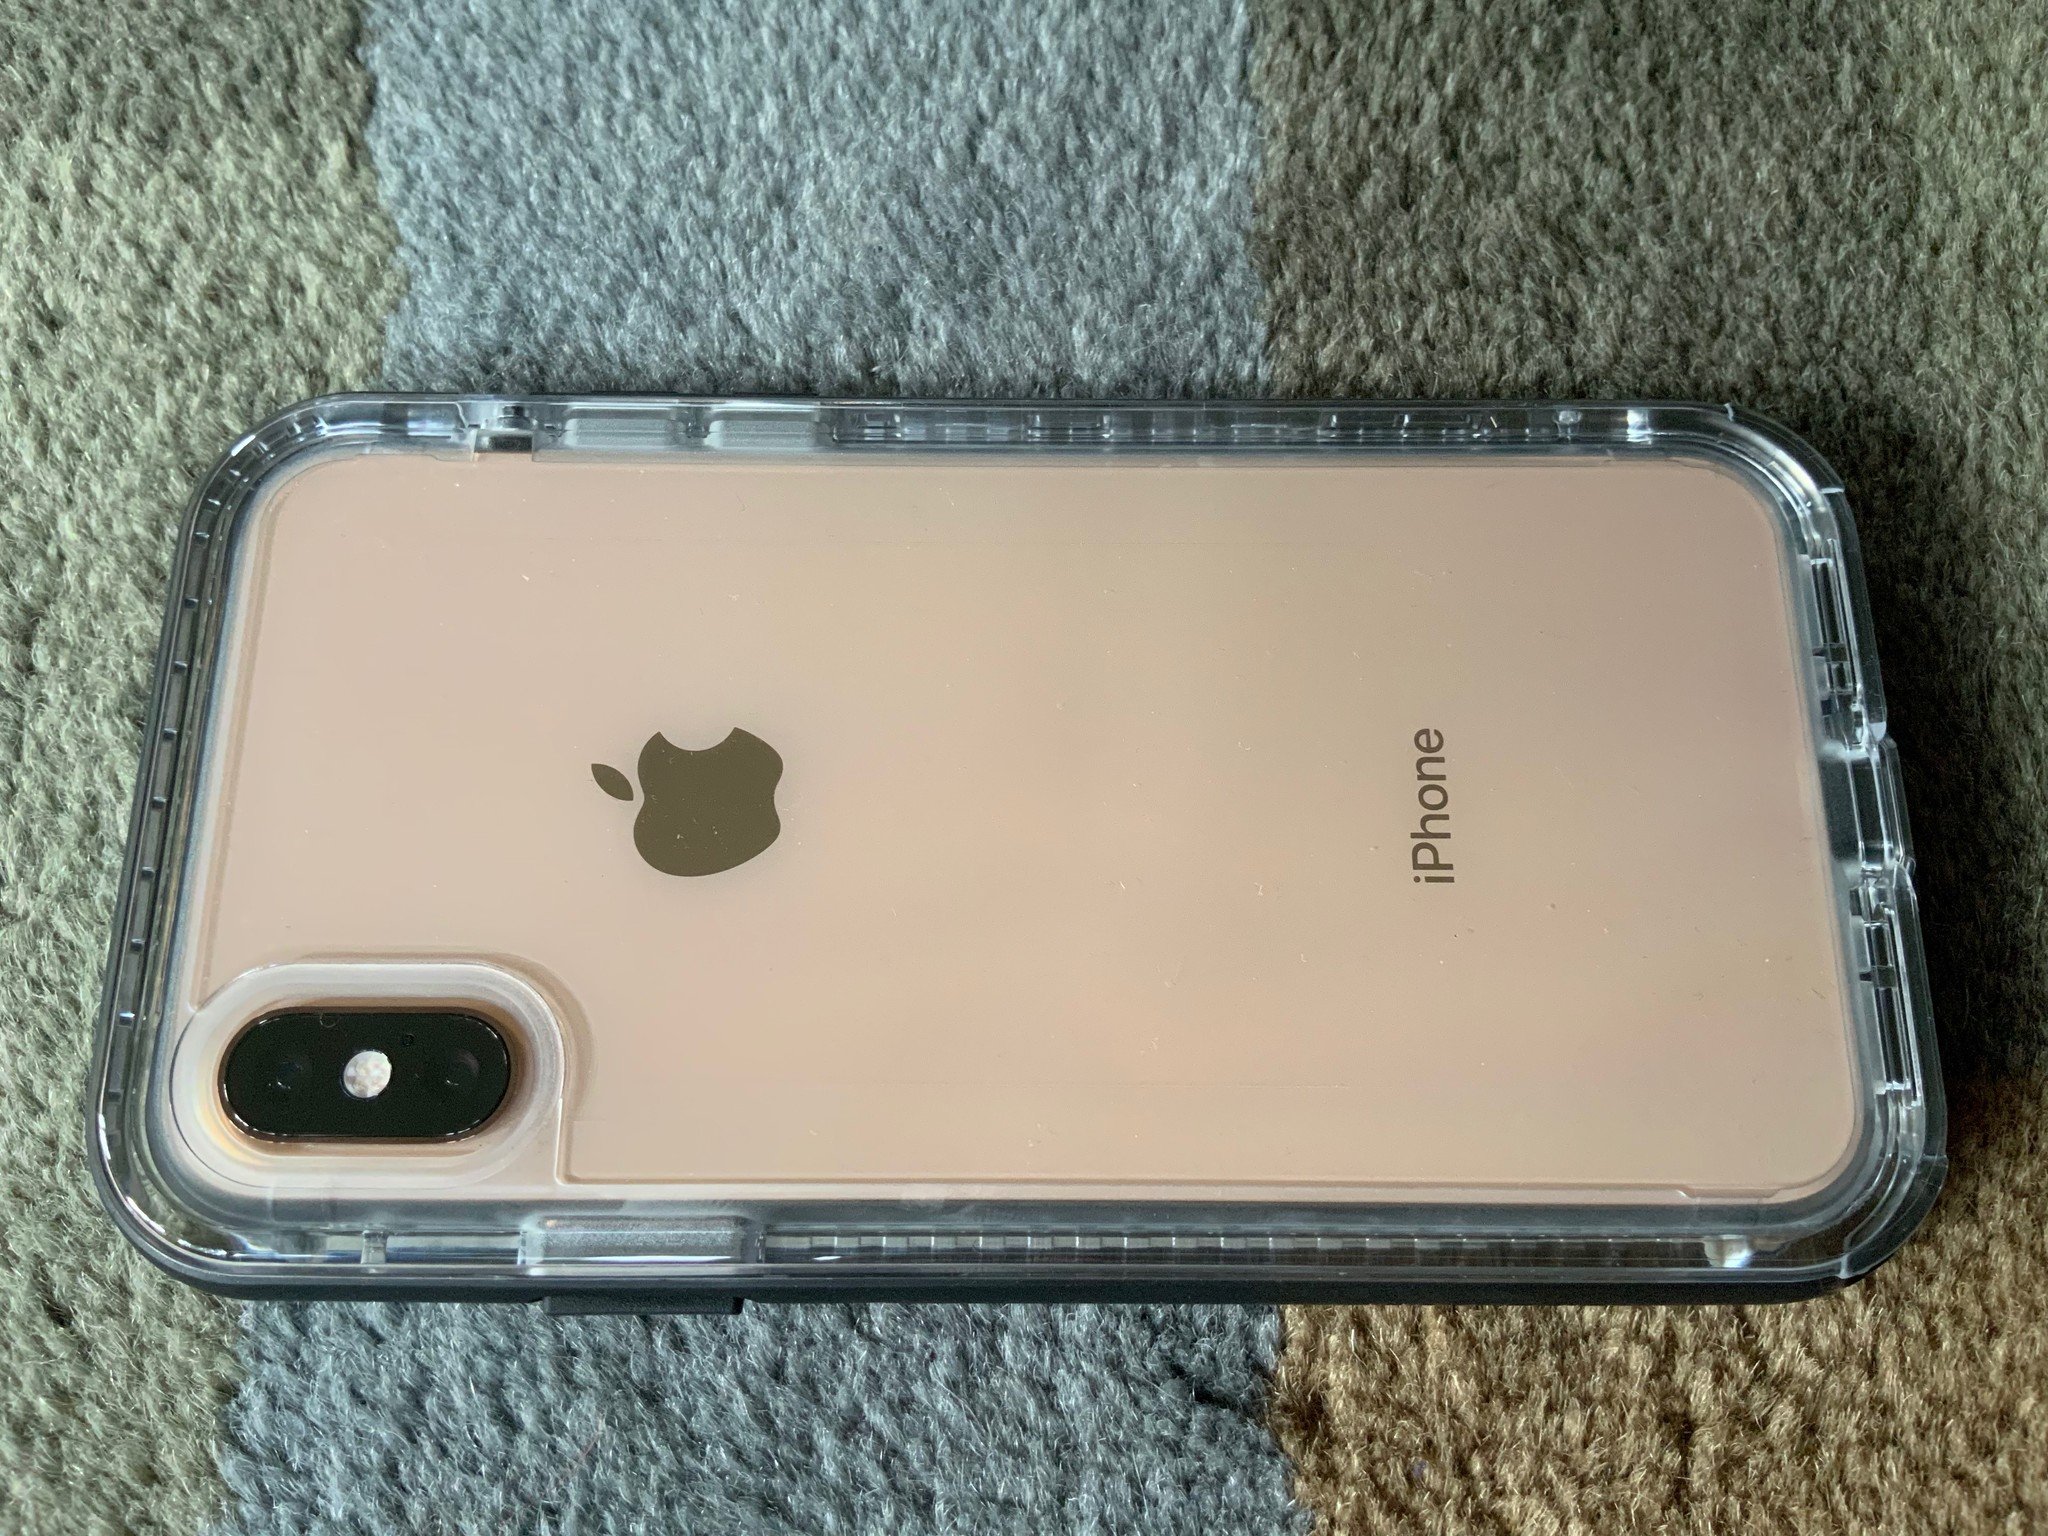 Lifeproof next iPhone case